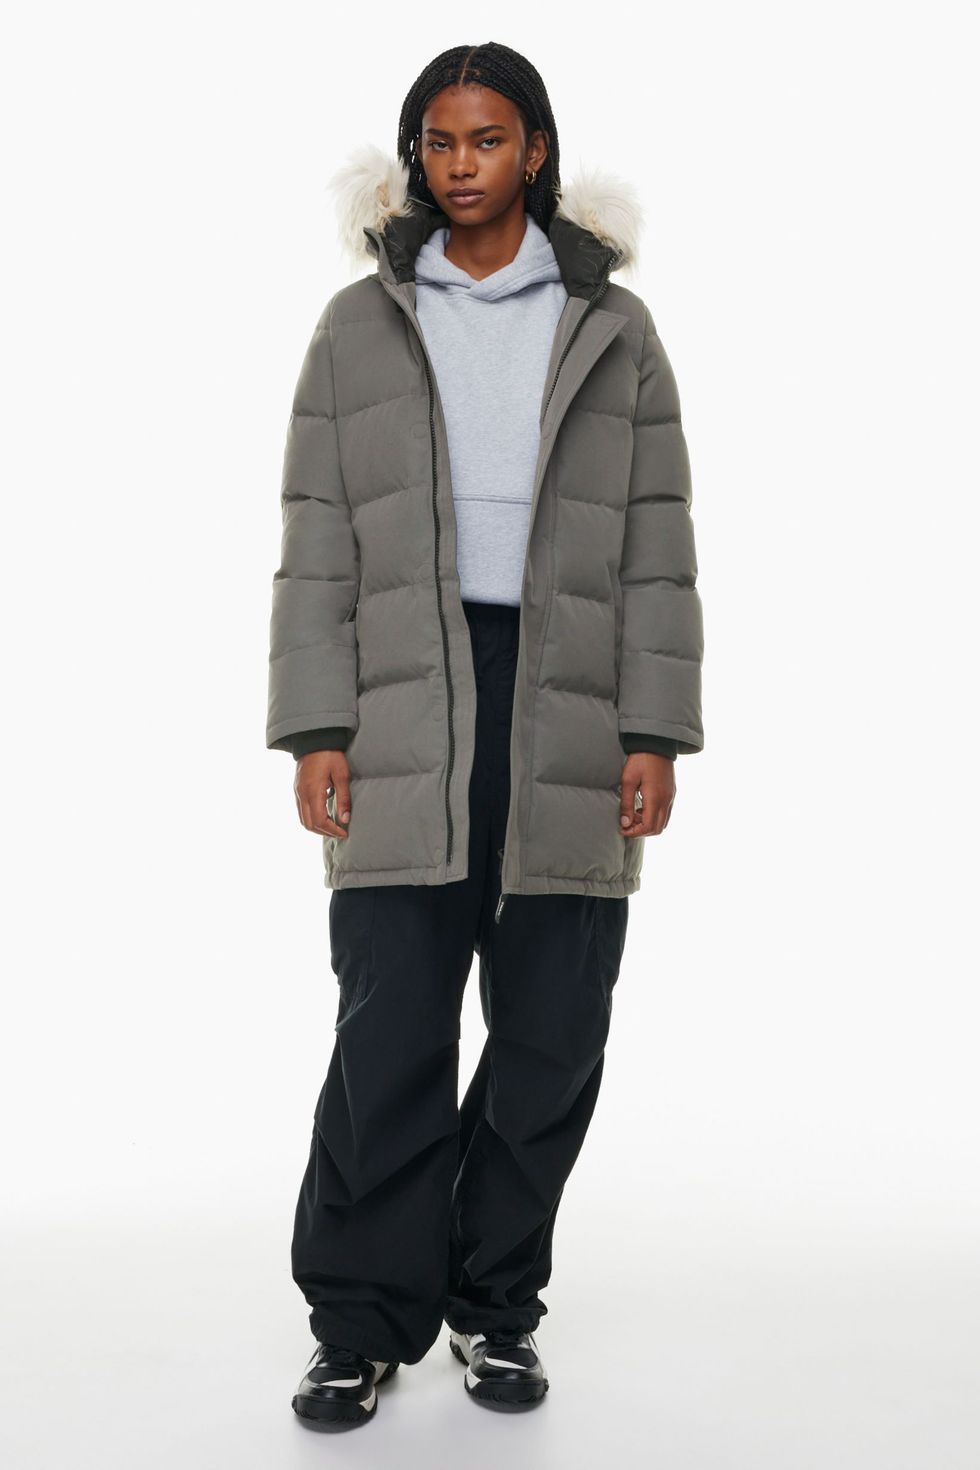 40 Warm Winter Coats 2023 - Cute Winter Coats for Women